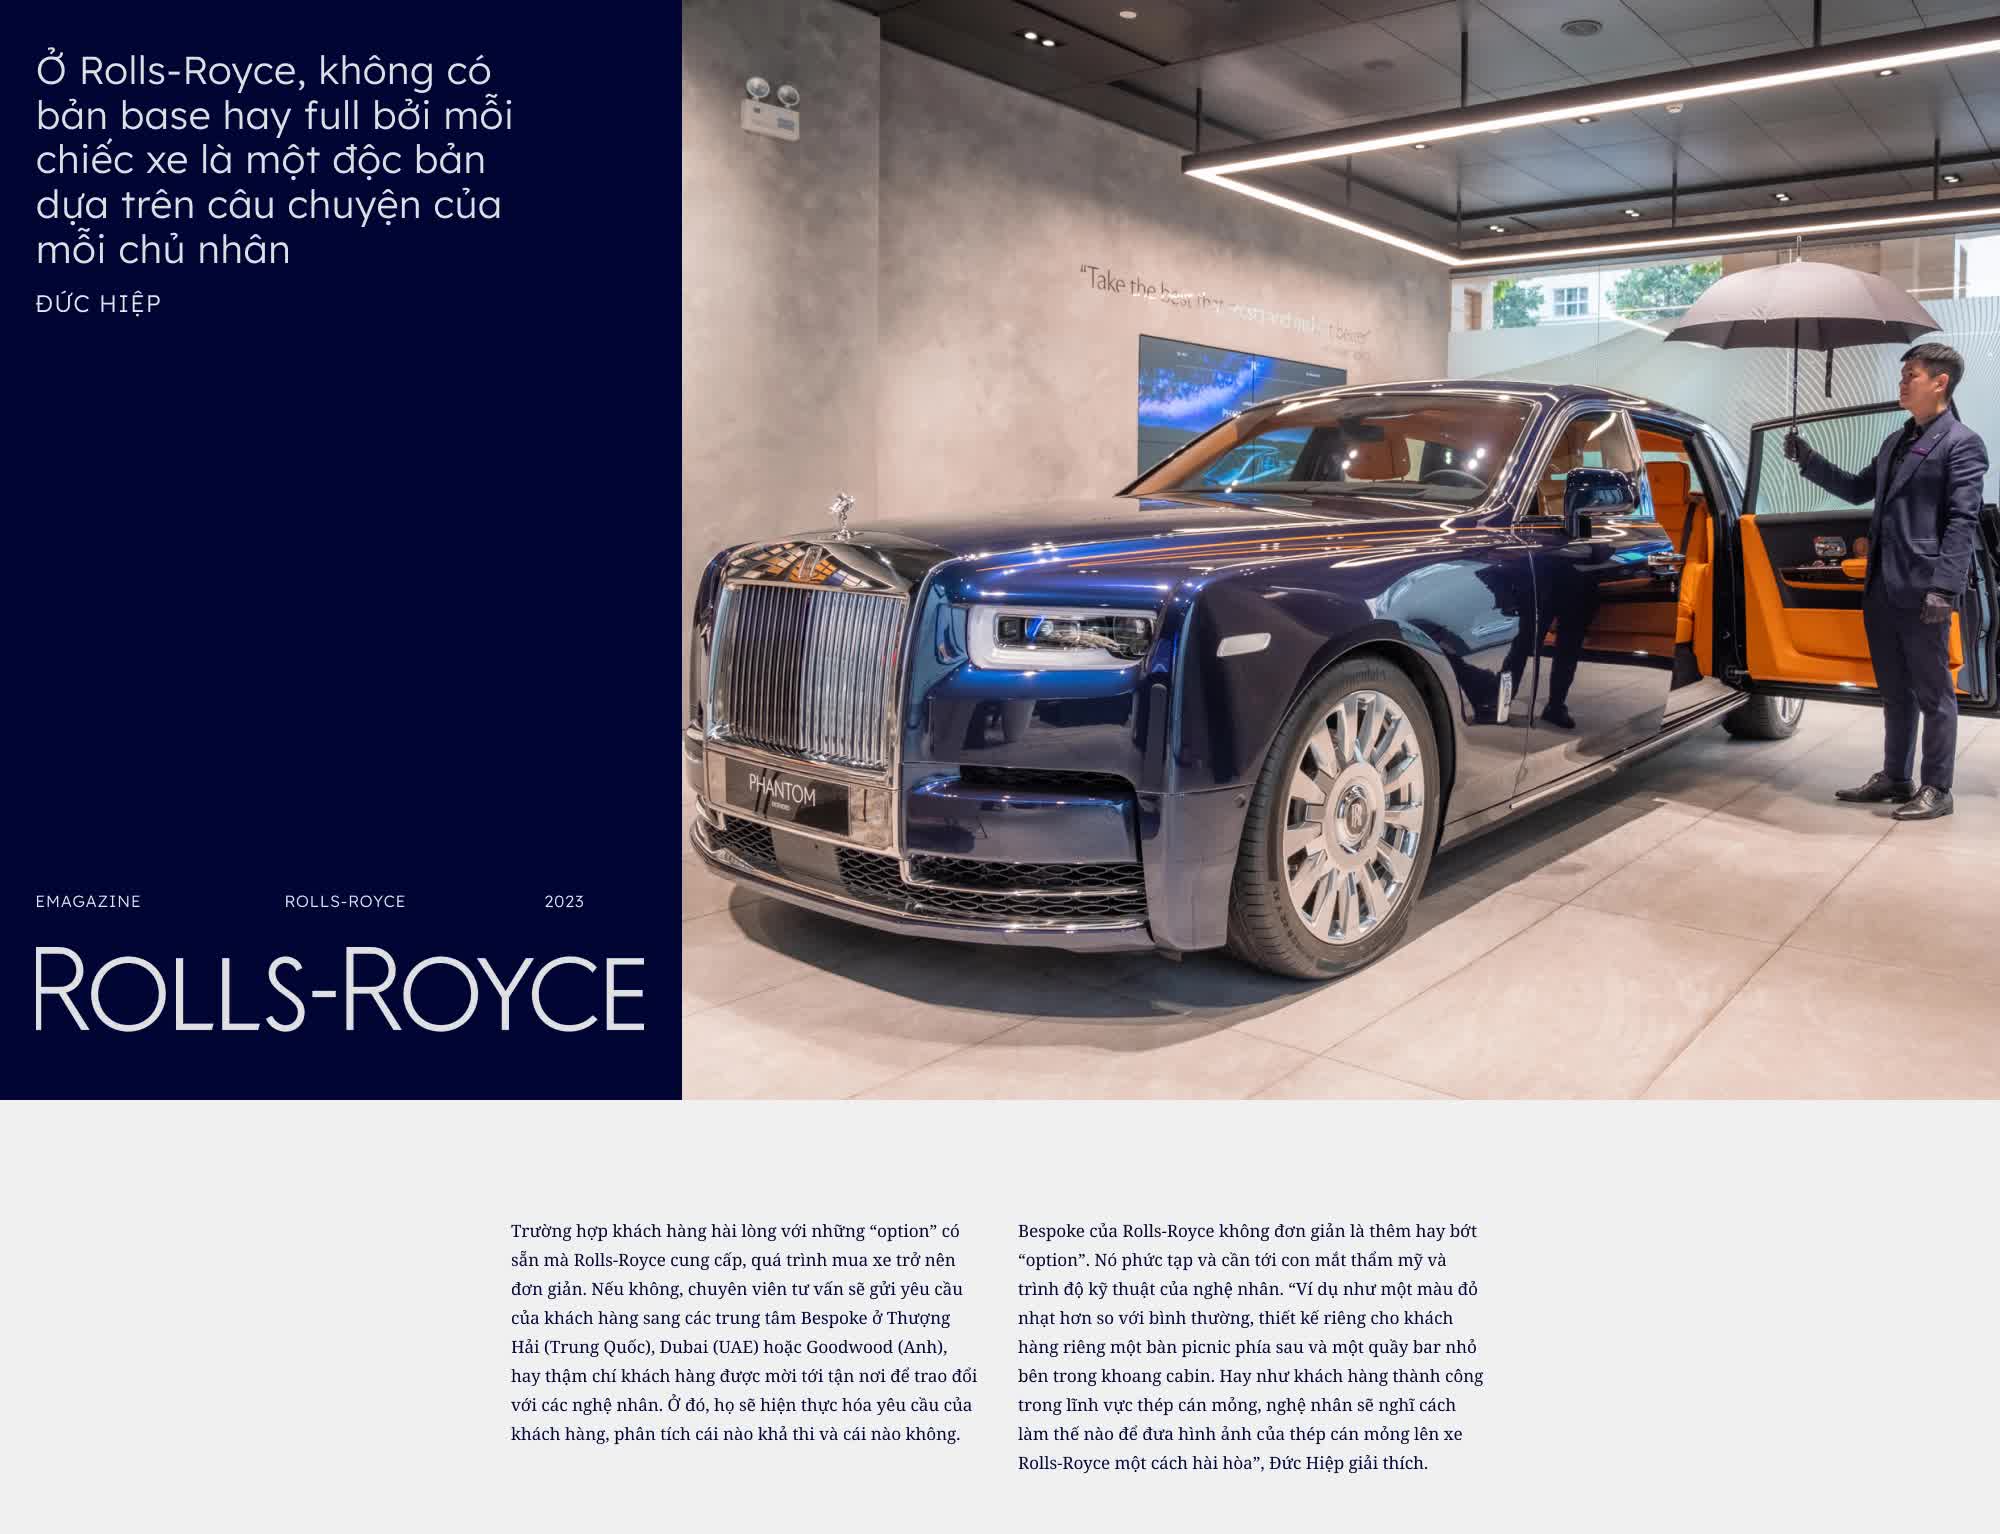 Thử đi mua Rolls-Royce tại Việt Nam: Một cú tick chọn màu sơn gần 2 tỷ, có yêu cầu dù nhiều tiền mấy cũng bị từ chối - Ảnh 5.